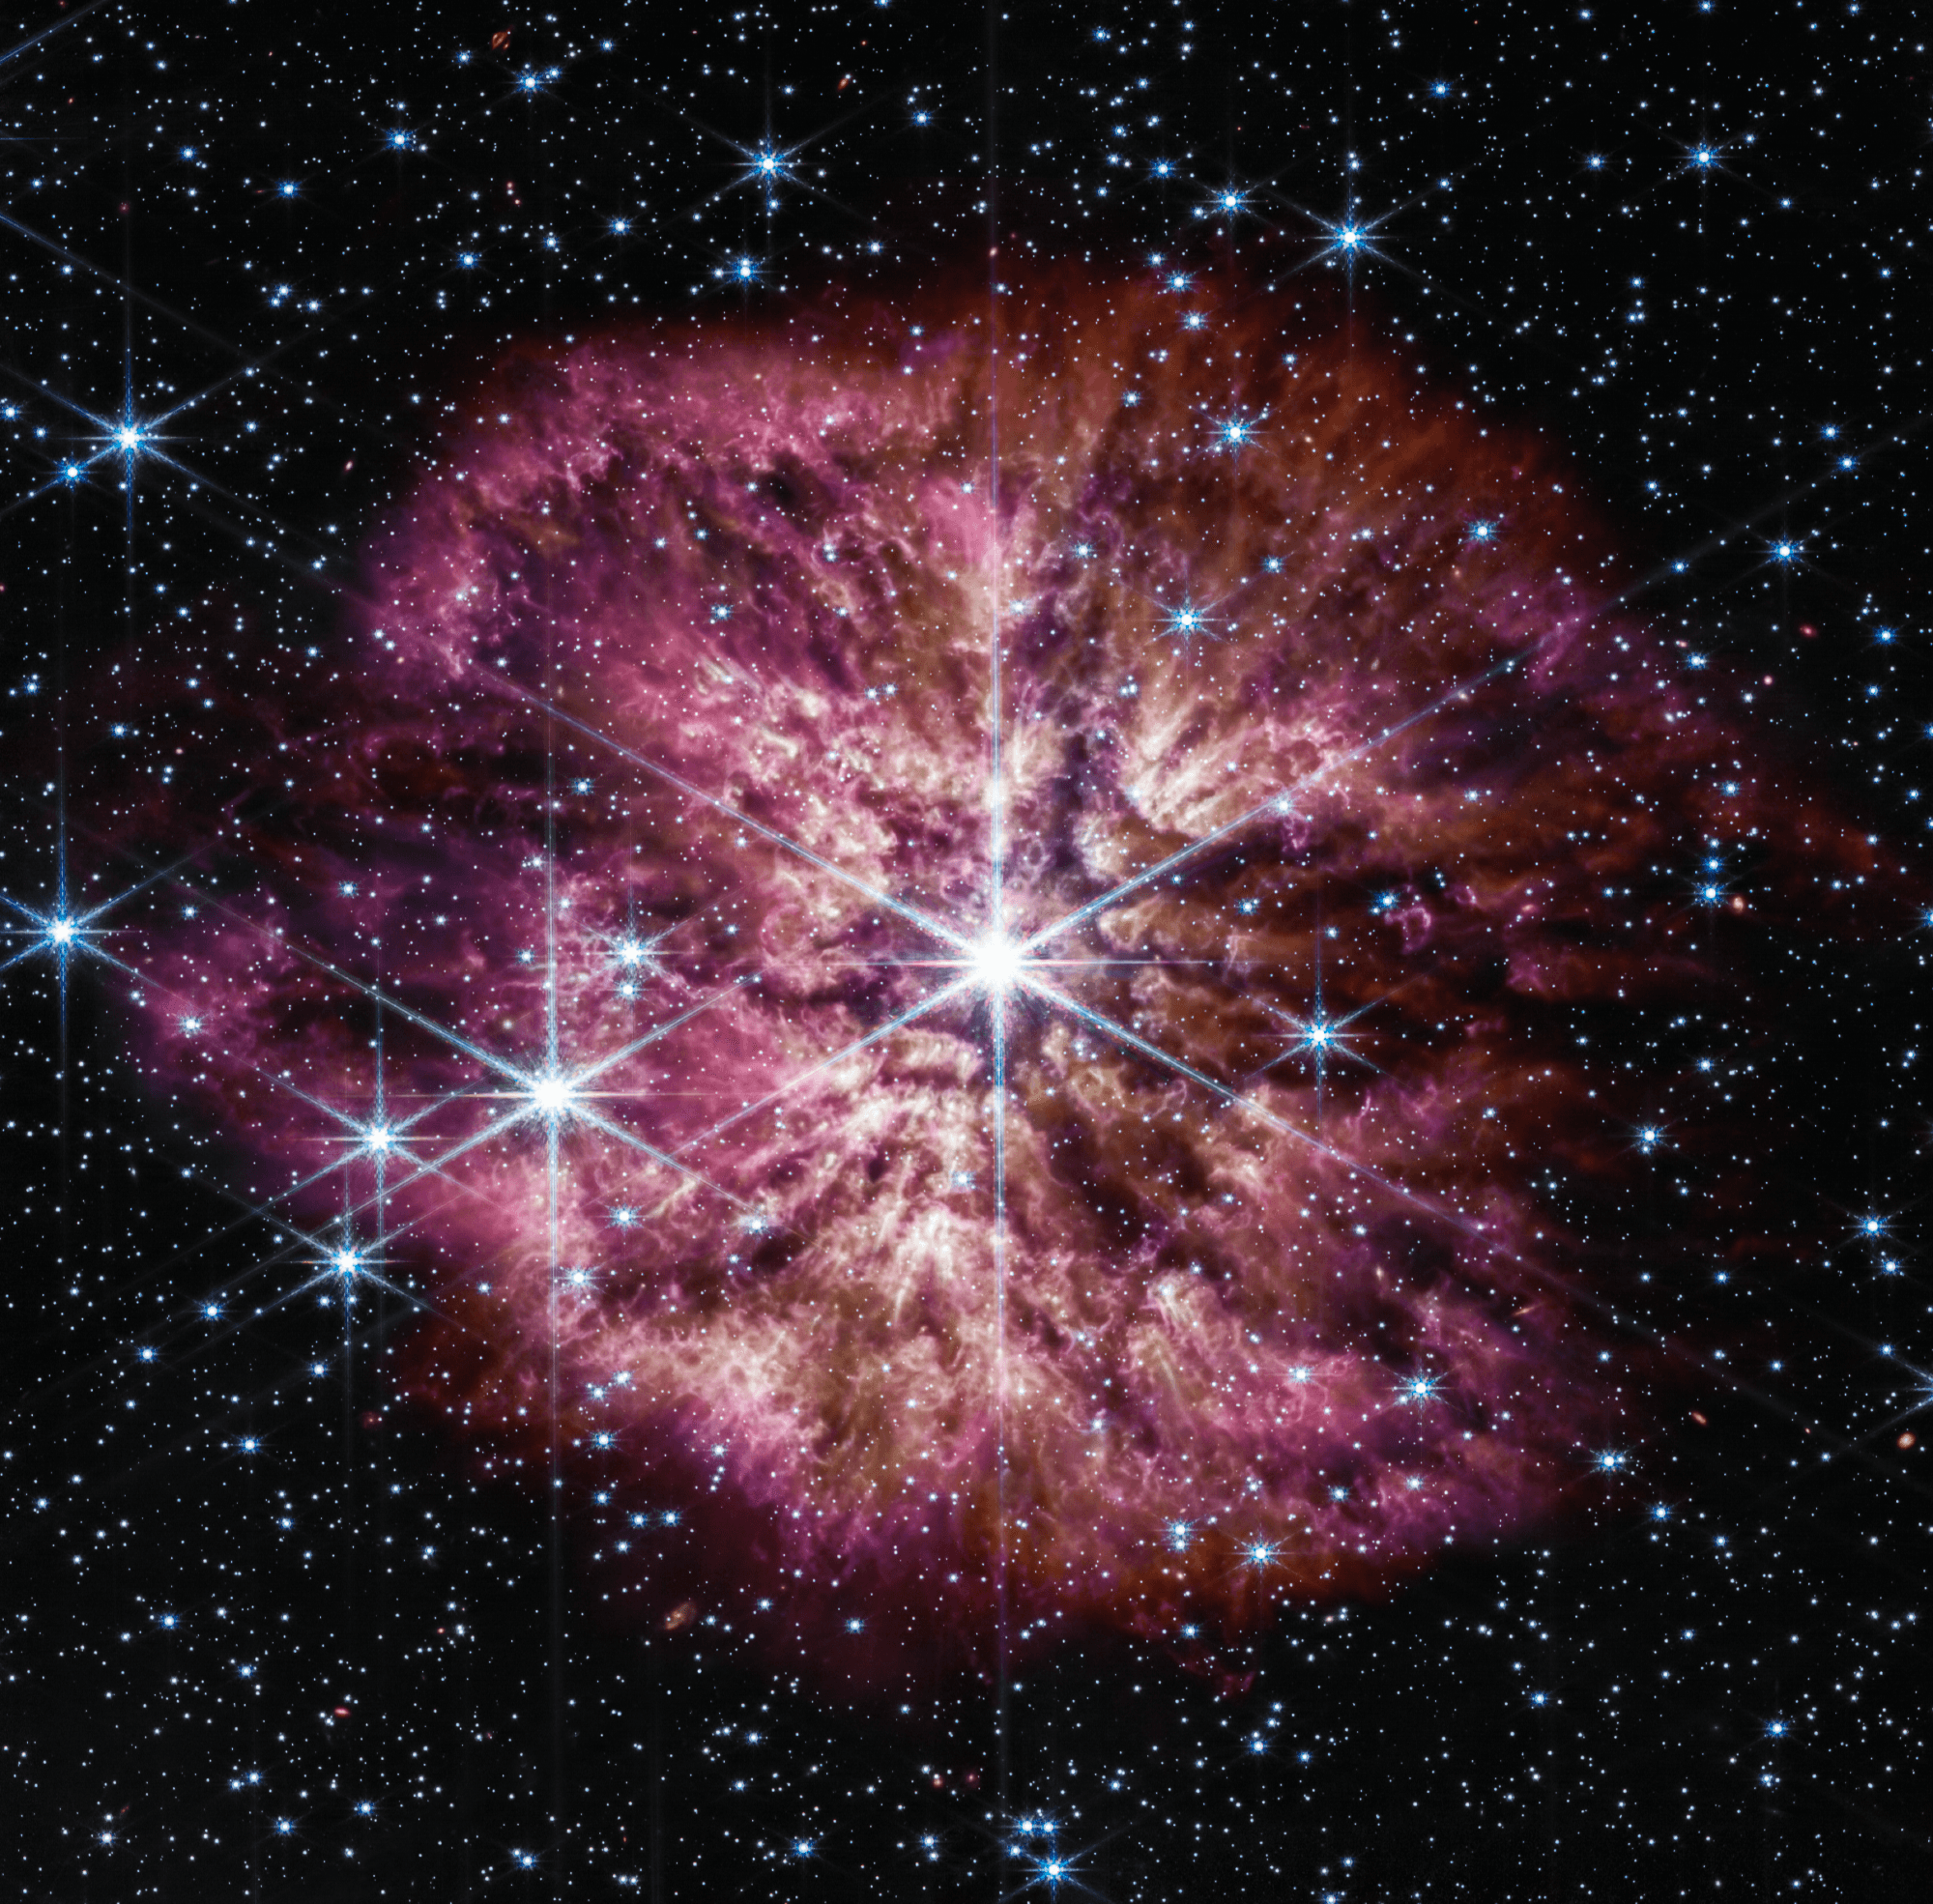 سديم يظهر كنبتة كثيفة اسفنجيّة تتفرّع من المركز بألوان ترابيّة ثم ورديّة، مع ظهور نجوم مدبّبة عبر الصورة